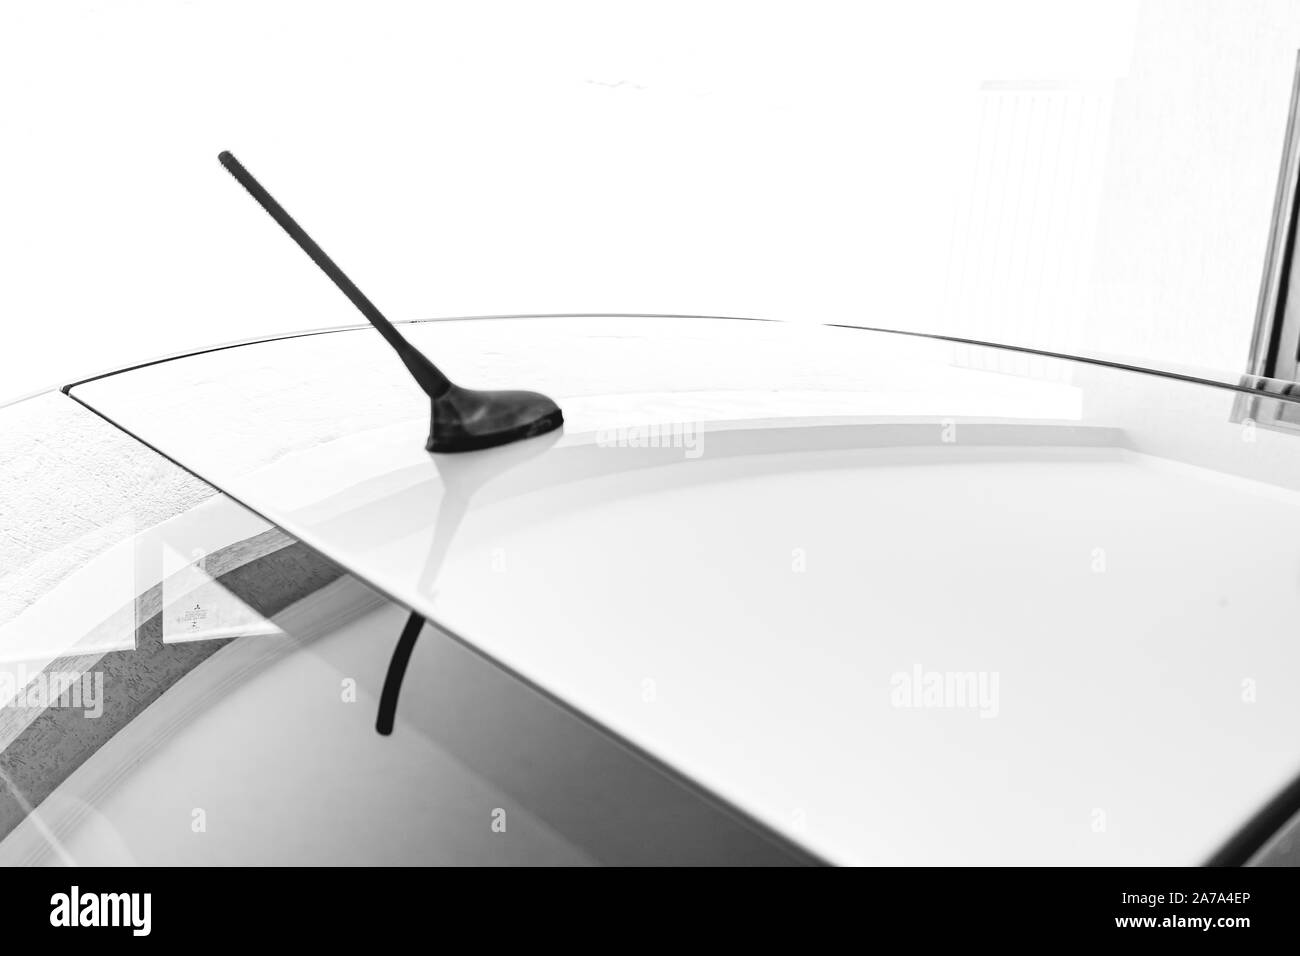 Antena de coche Imágenes de stock en blanco y negro - Alamy